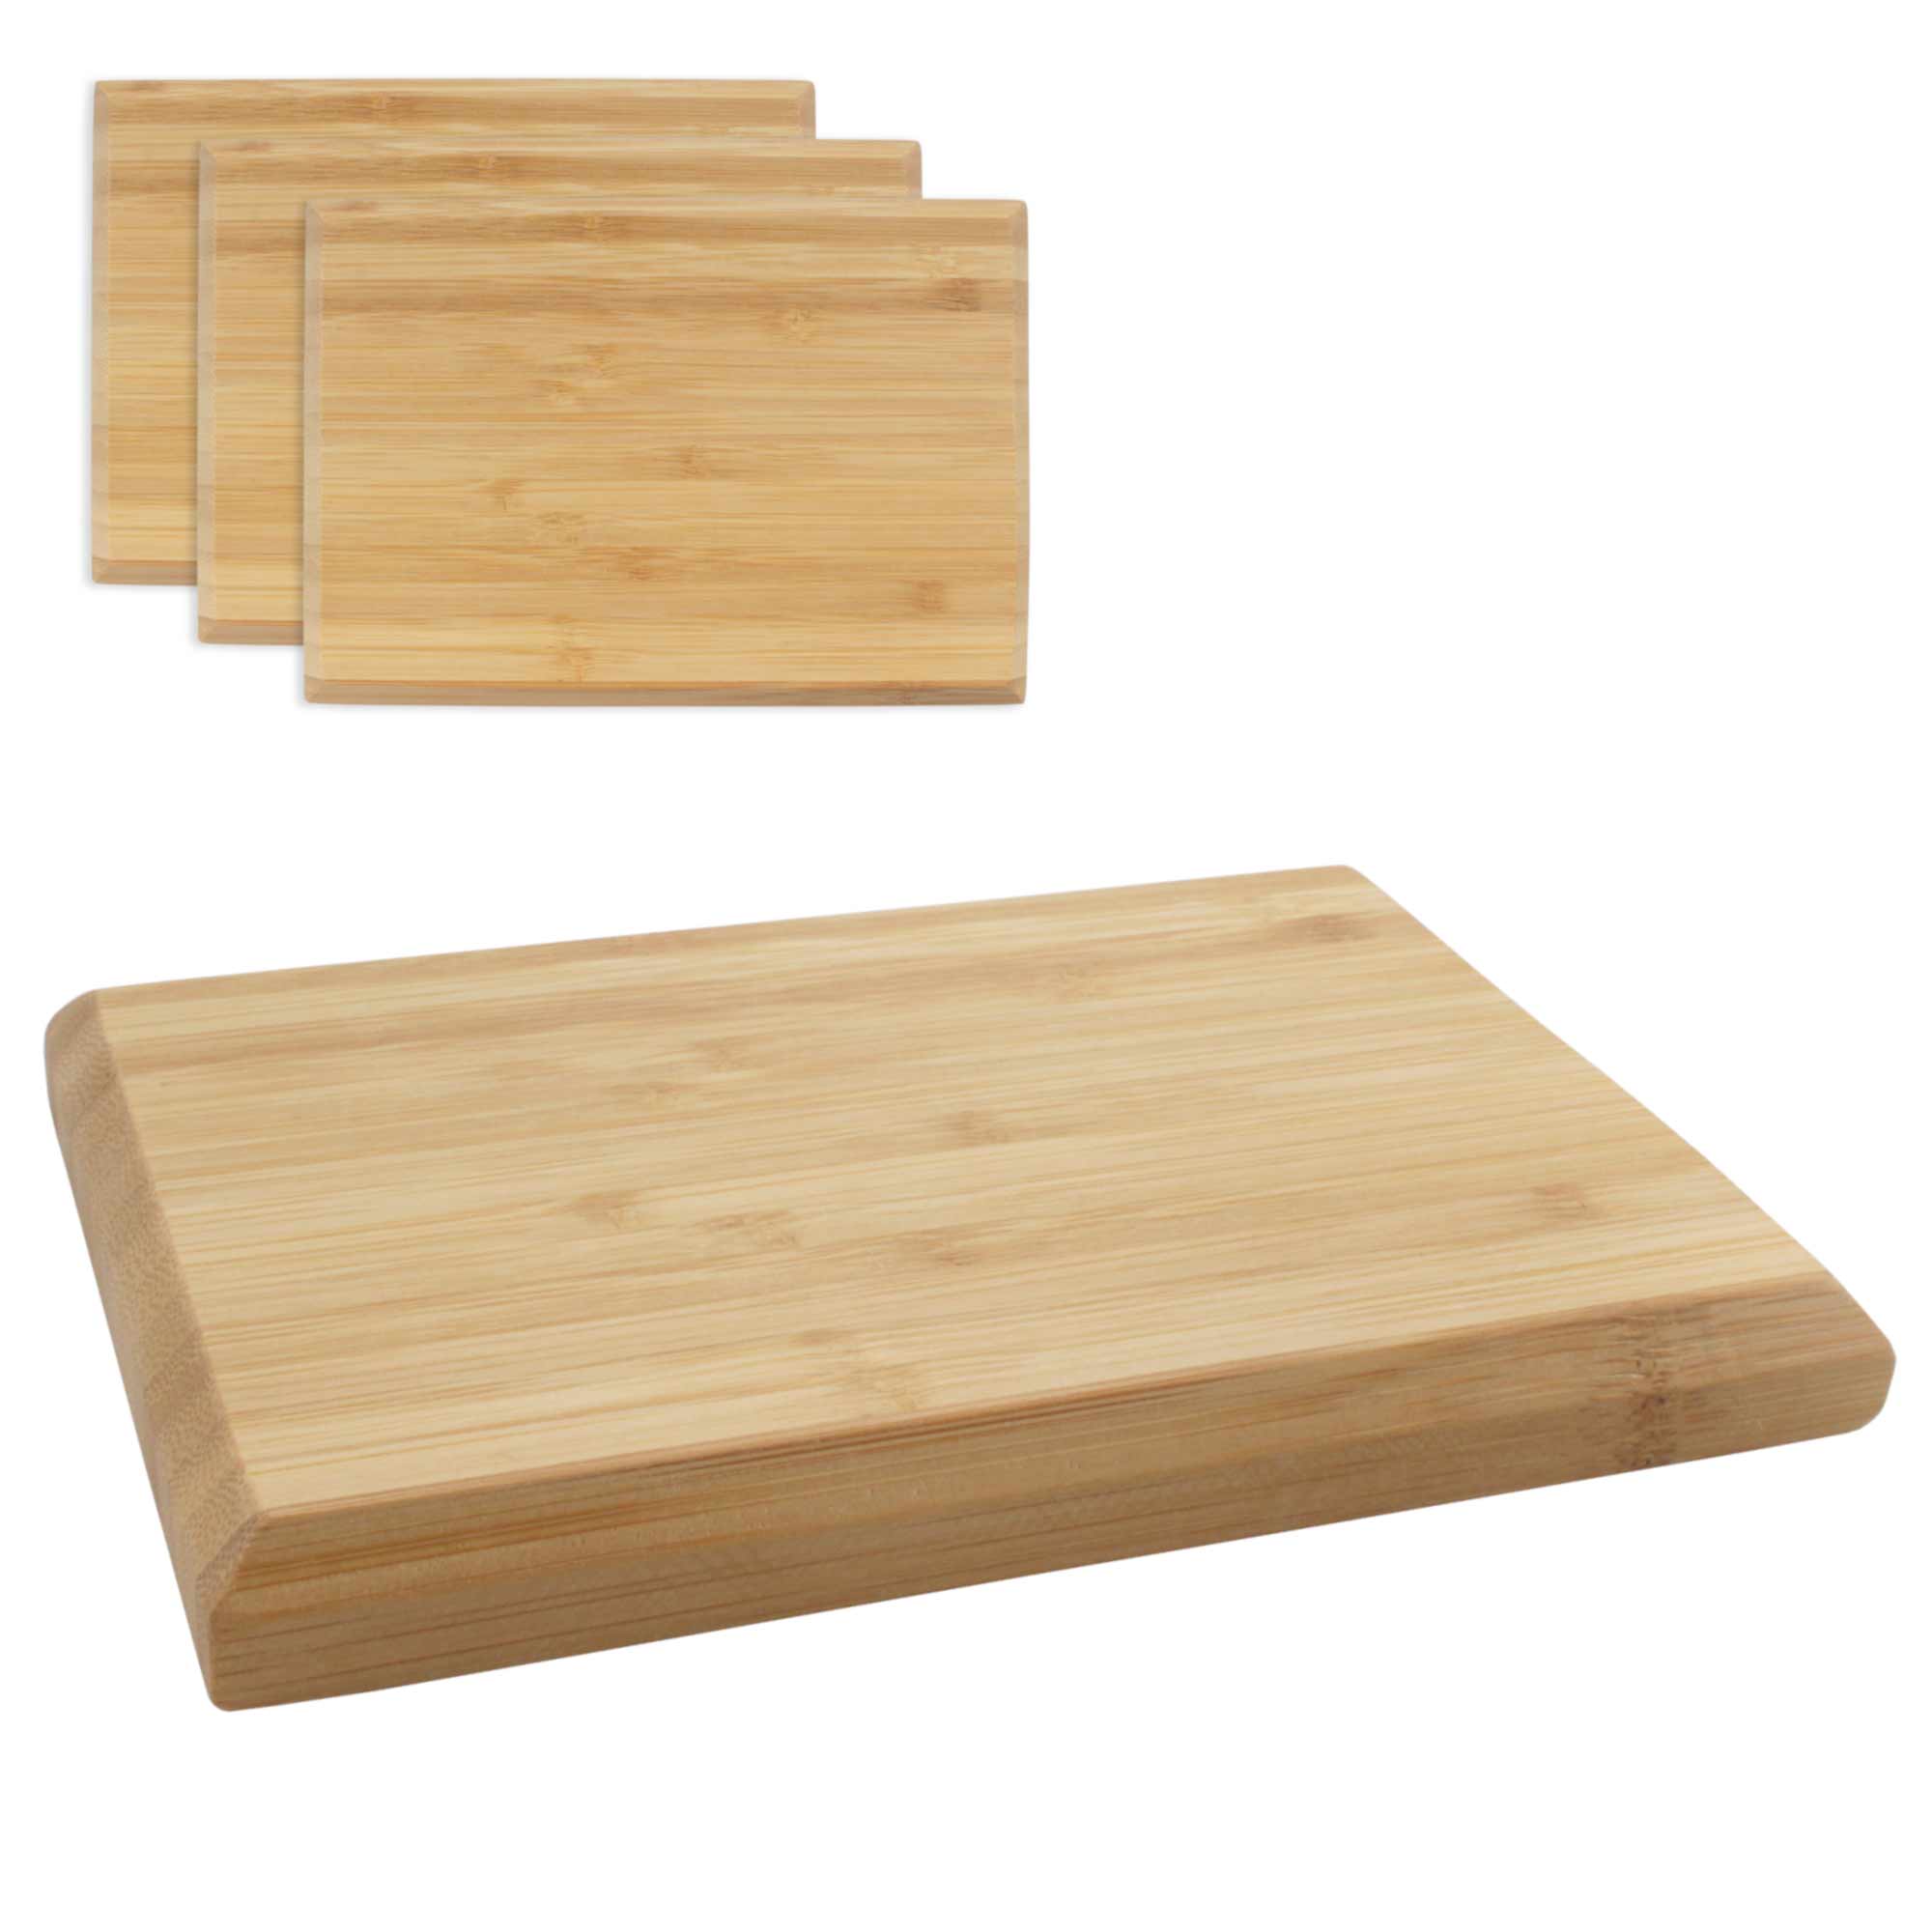 http://bamboomn.com/cdn/shop/products/bamboo-cutting-board-chamfered-edge-cb075-001-003-ce.jpg?v=1663684462